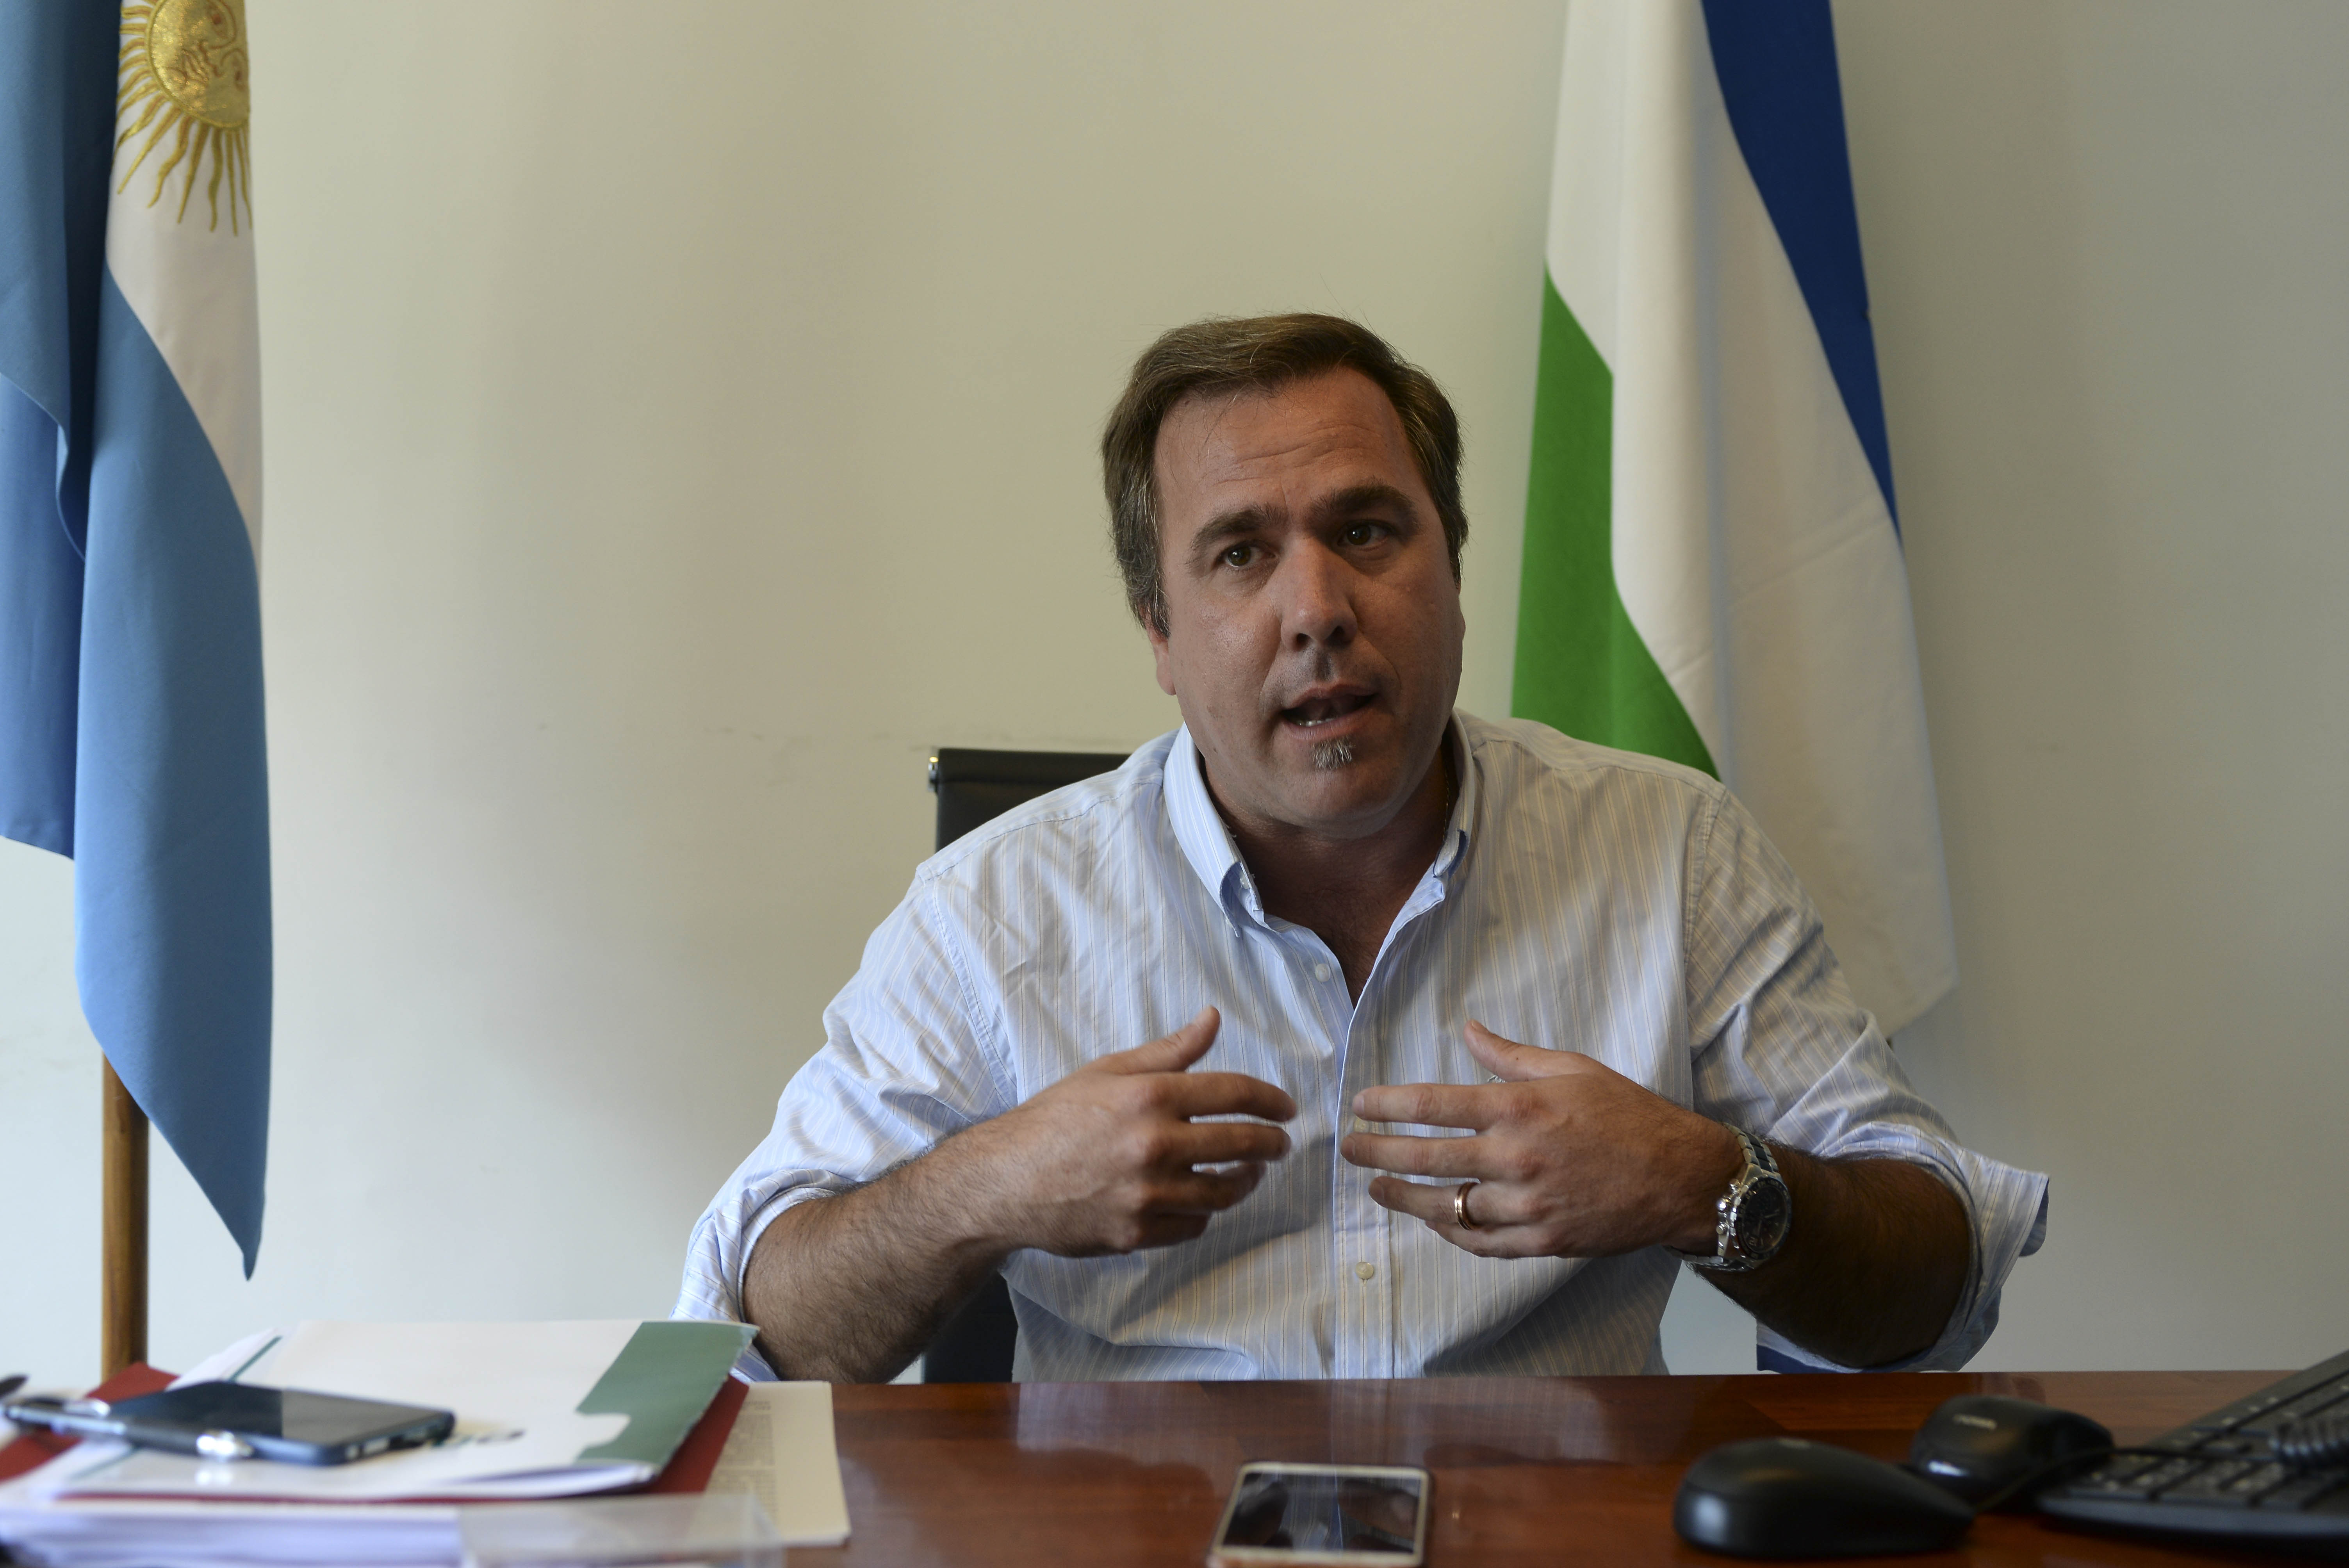 El intendente Bruno Pogliano vinculó los hechos violentos en El Bolsón con un mensaje de la titular del INAI que habló de "represión policial". Archivo